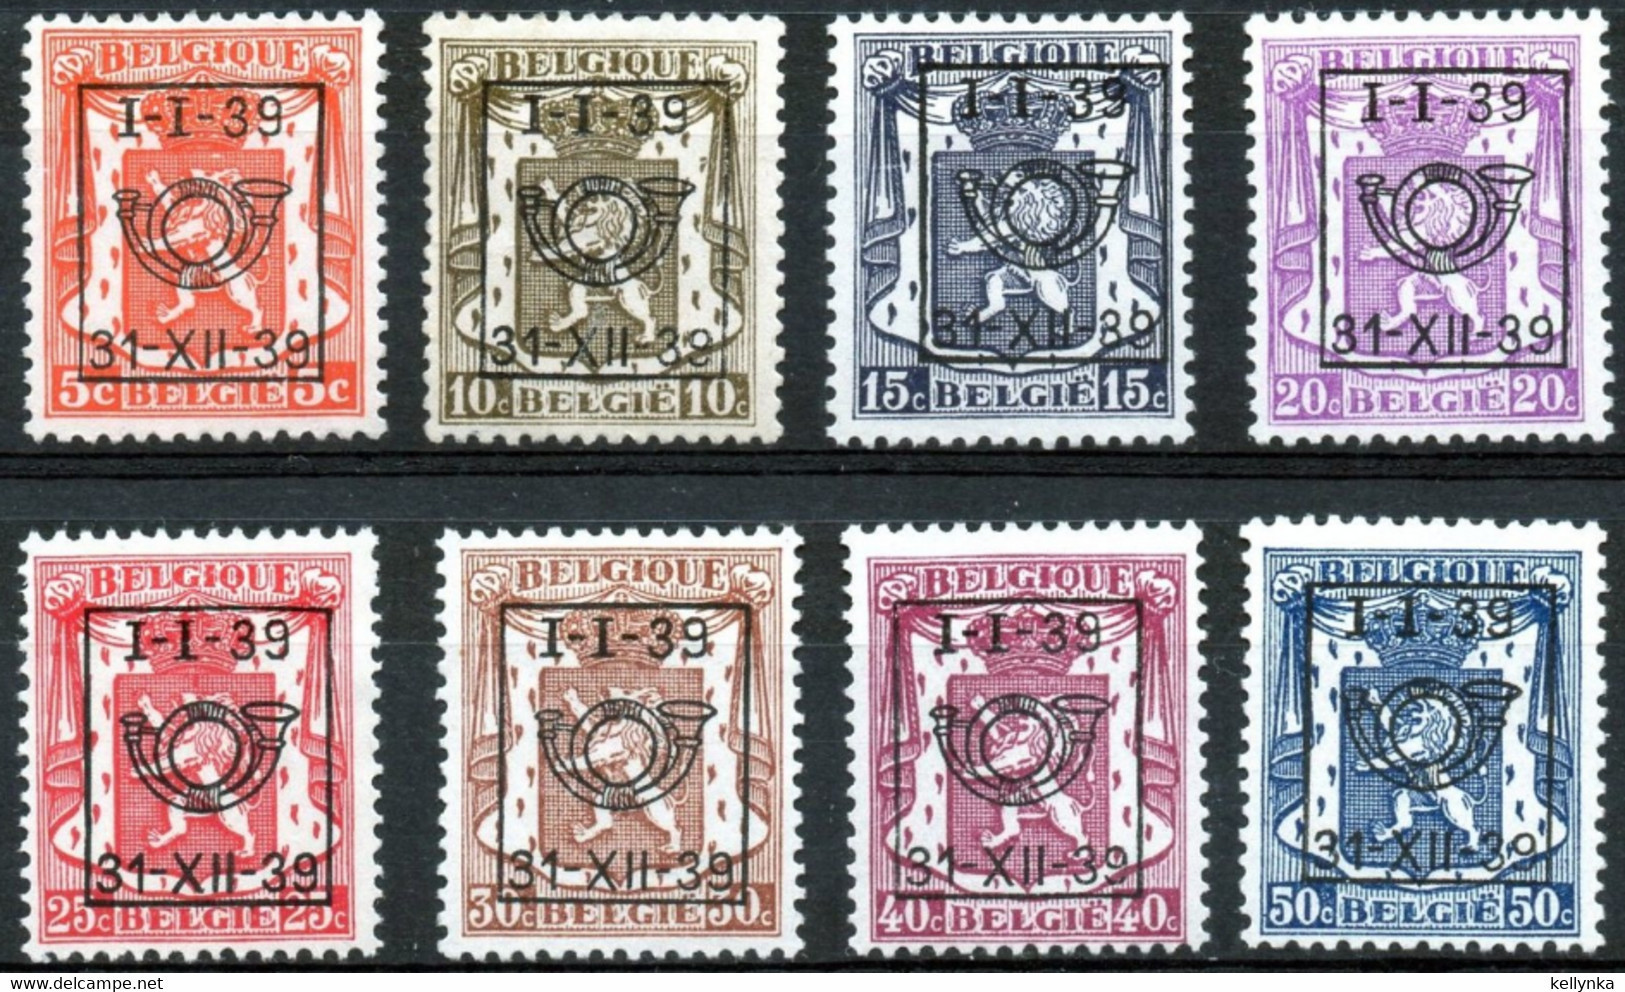 Belgique - Belgie - PRE420/427 - Préoblitérés - 1939 - MNH & MH - Typo Precancels 1936-51 (Small Seal Of The State)